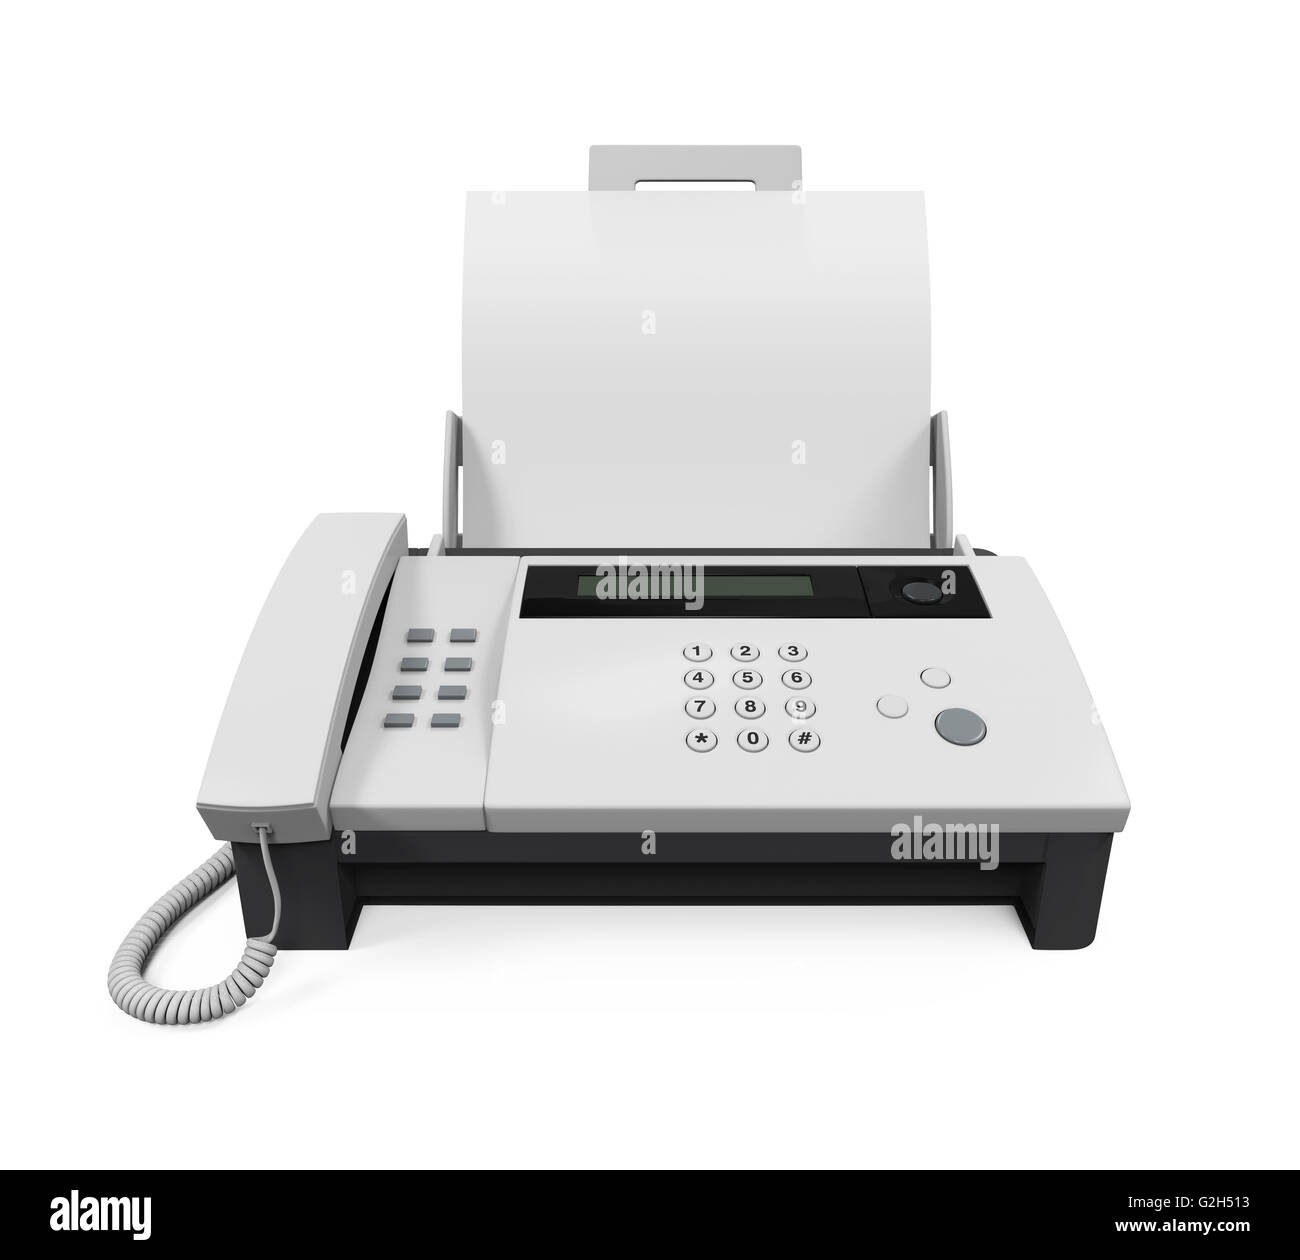 Fax machine immagini e fotografie stock ad alta risoluzione - Alamy